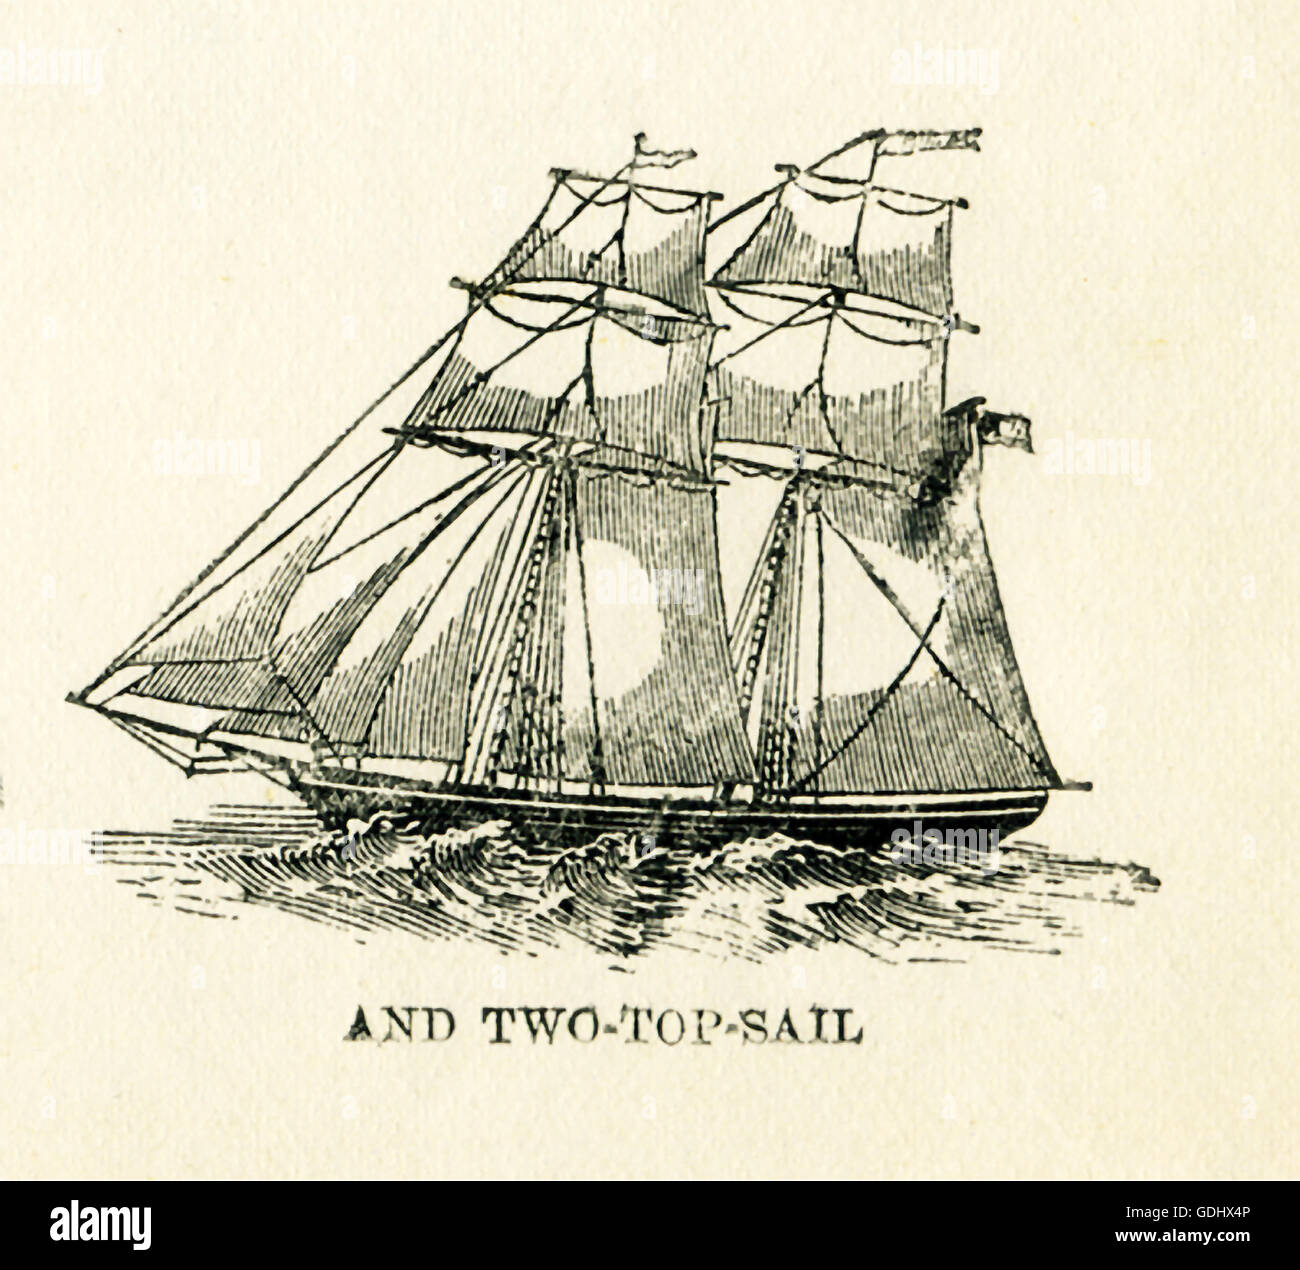 Das Schiff in dieser Zeichnung aus dem 19. Jahrhundert abgebildet ist ein Schoner, speziell ein zwei-Spitze-Segel. Stockfoto